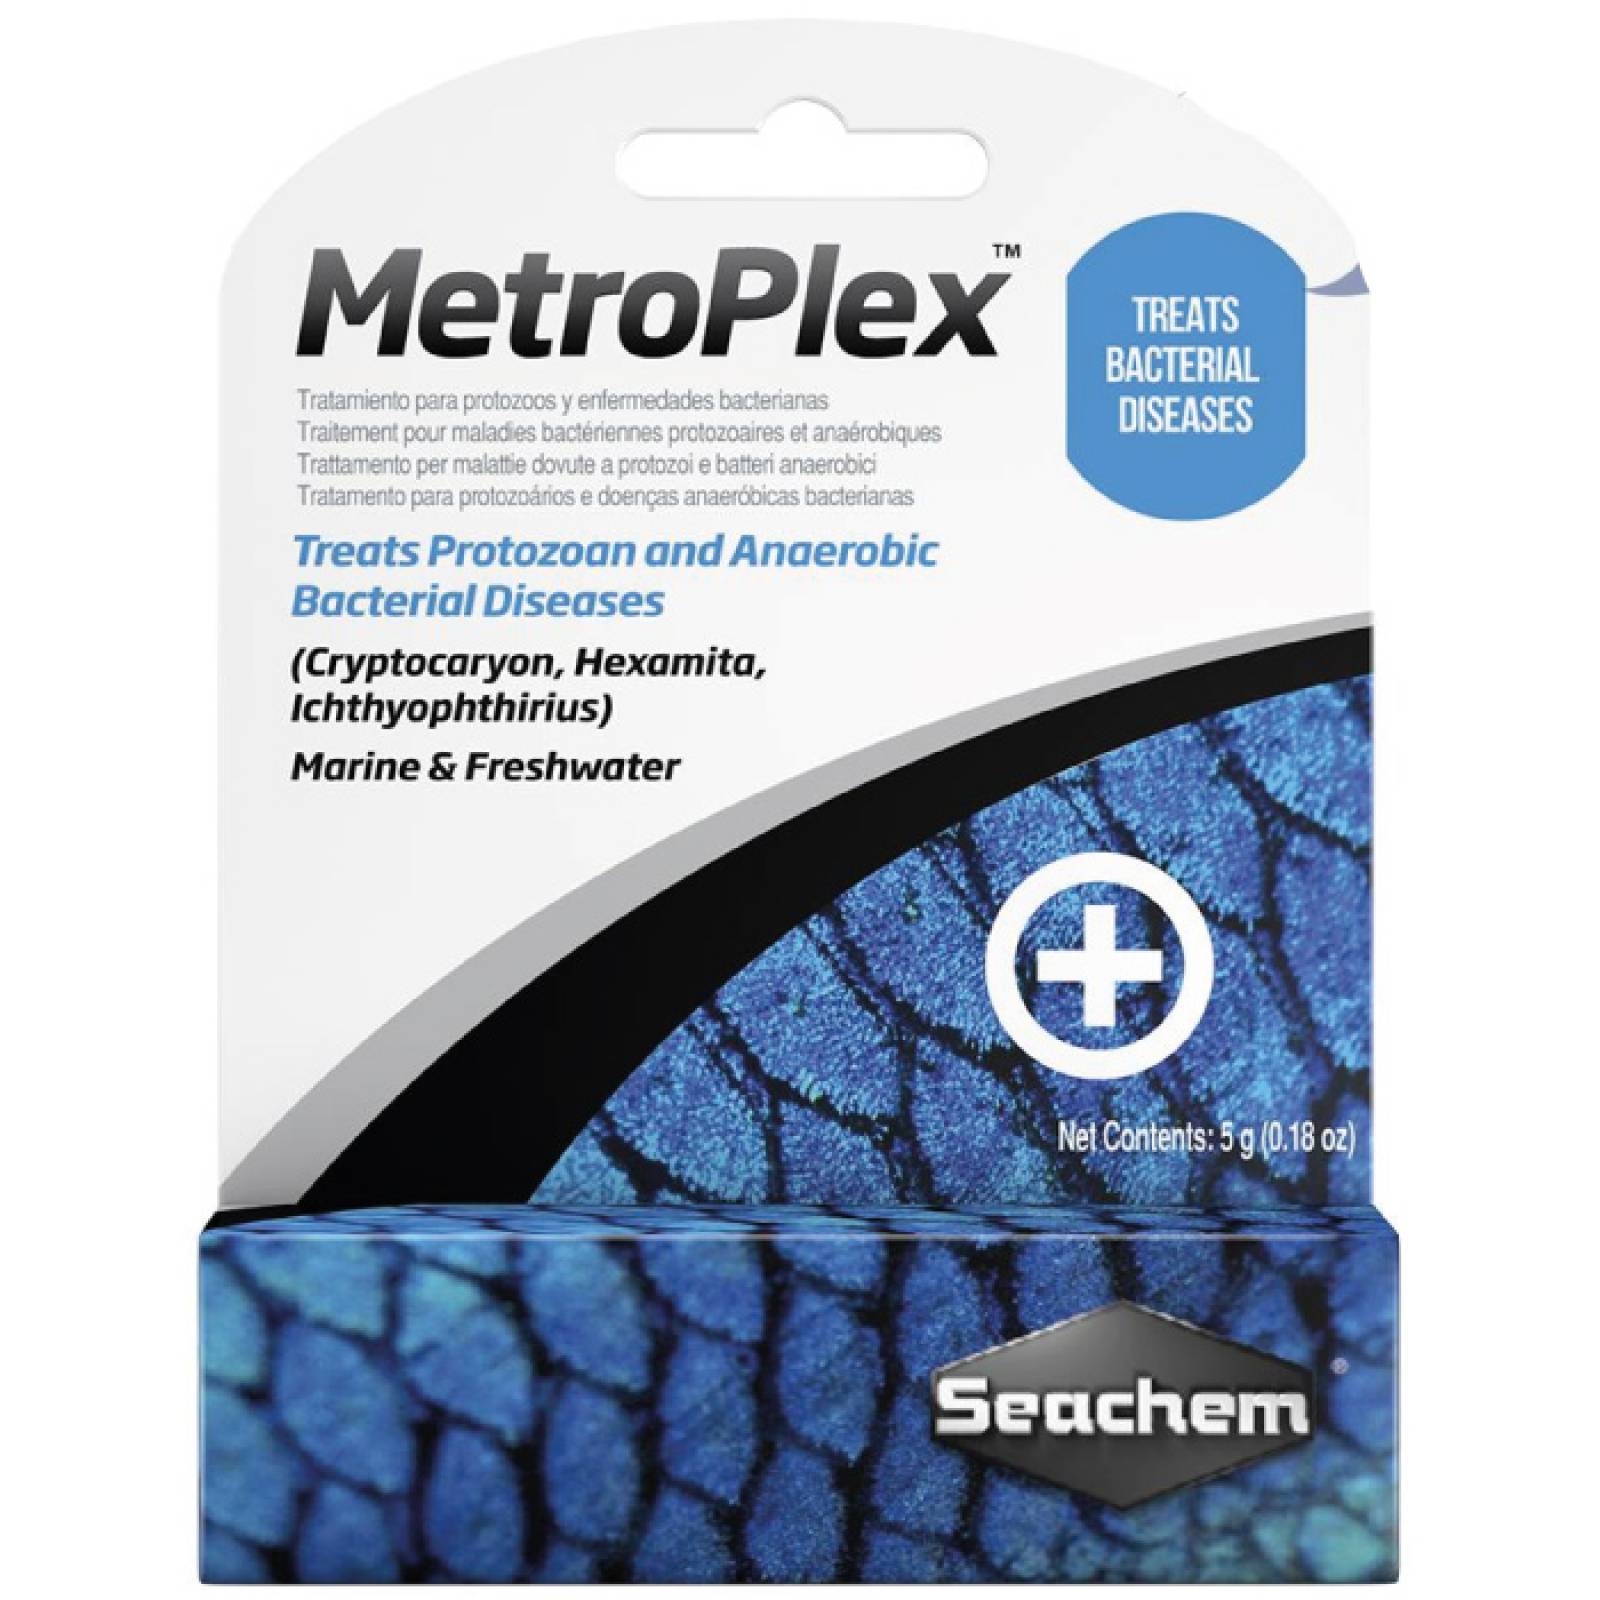 Seachem Metroplex Metronidazole 5 Gramos 0,2 Onza Medicamento para Enfermedades